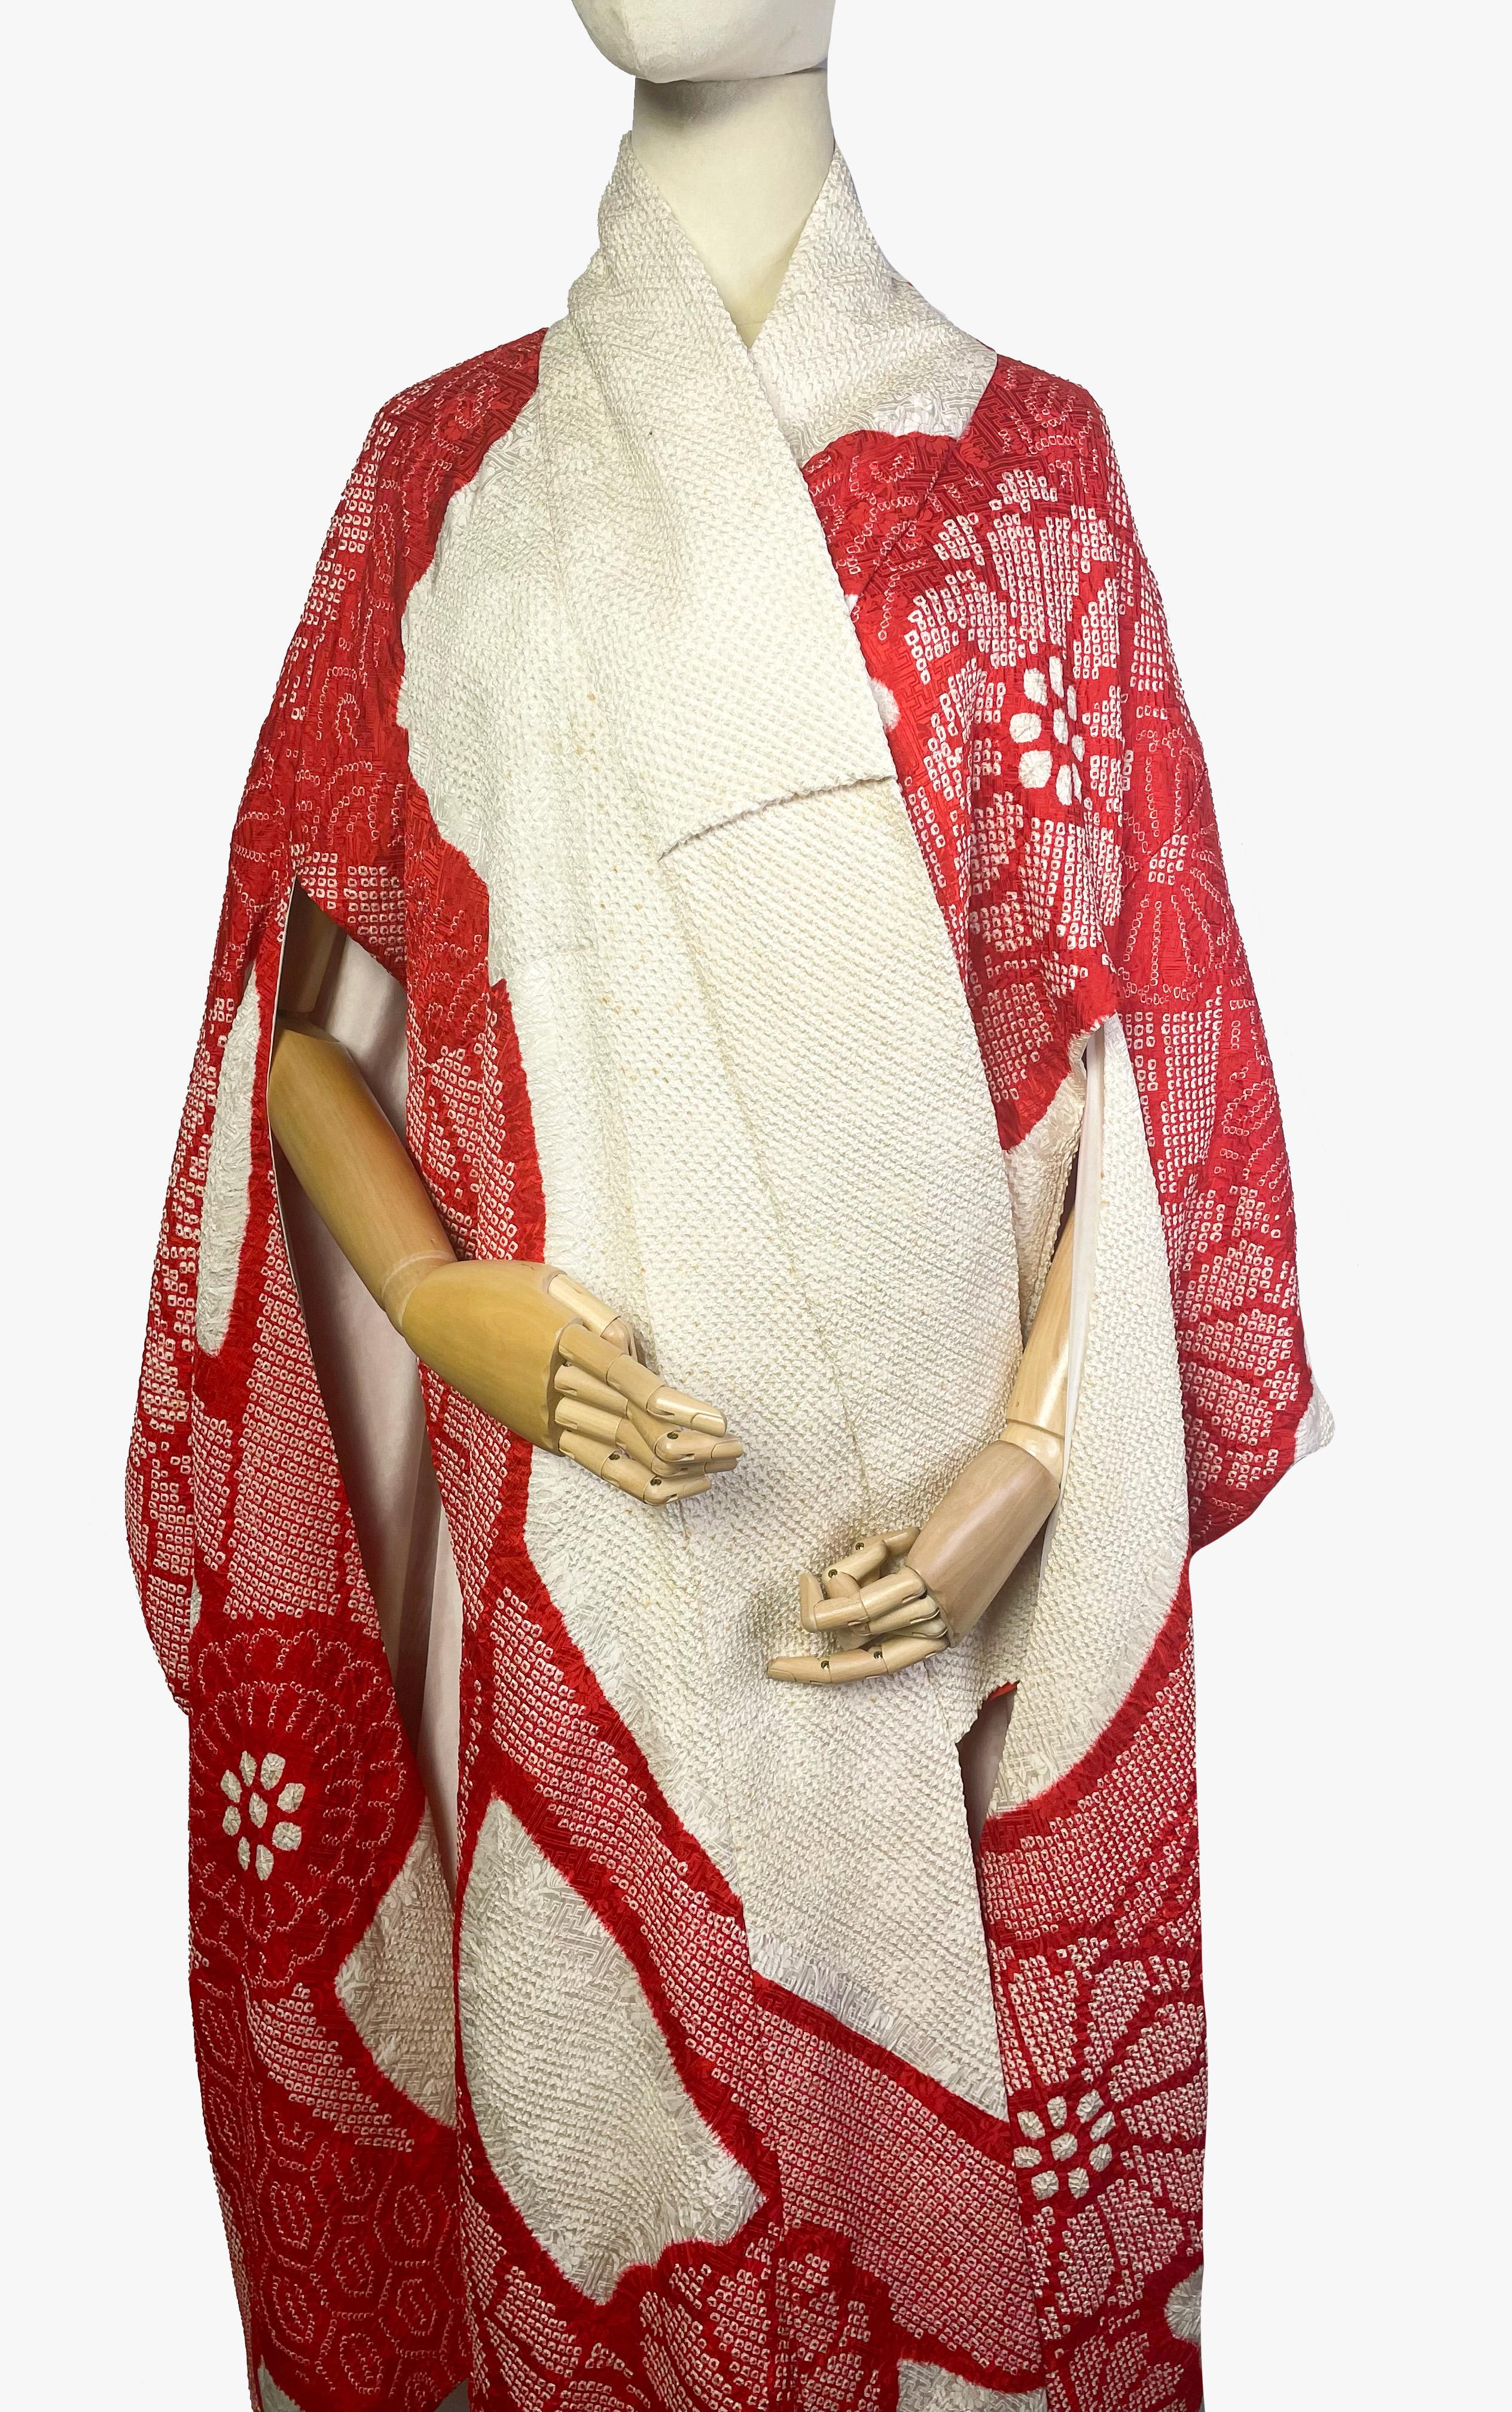 Schöner handgefärbter Vintage-Hochzeitskimono in Kyokanoko-Shibori-Technik. 

In Weiß- und Rottönen, verziert mit einem floralen Muster. 

Zeitraum - 1970er Jahre

Stoff - 100% Seide

Condit - sehr gut, es gibt kleine gelbe